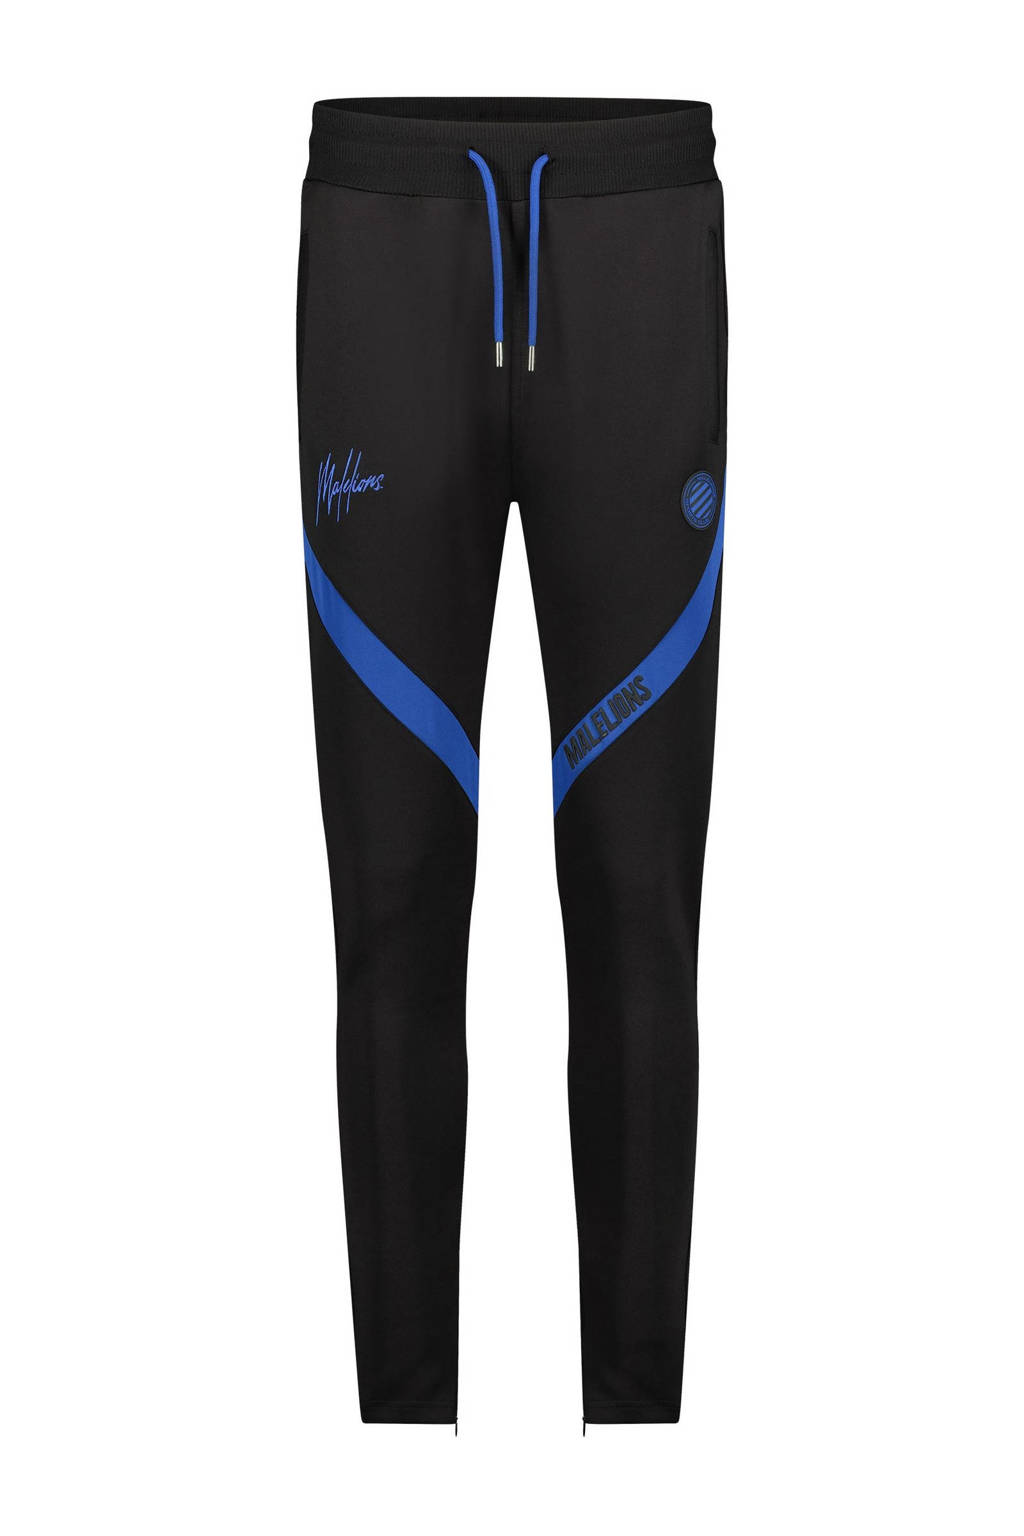 Malelions regular fit joggingbroek Trackpants Pre-Match met logo zwart/blauw, Zwart/blauw